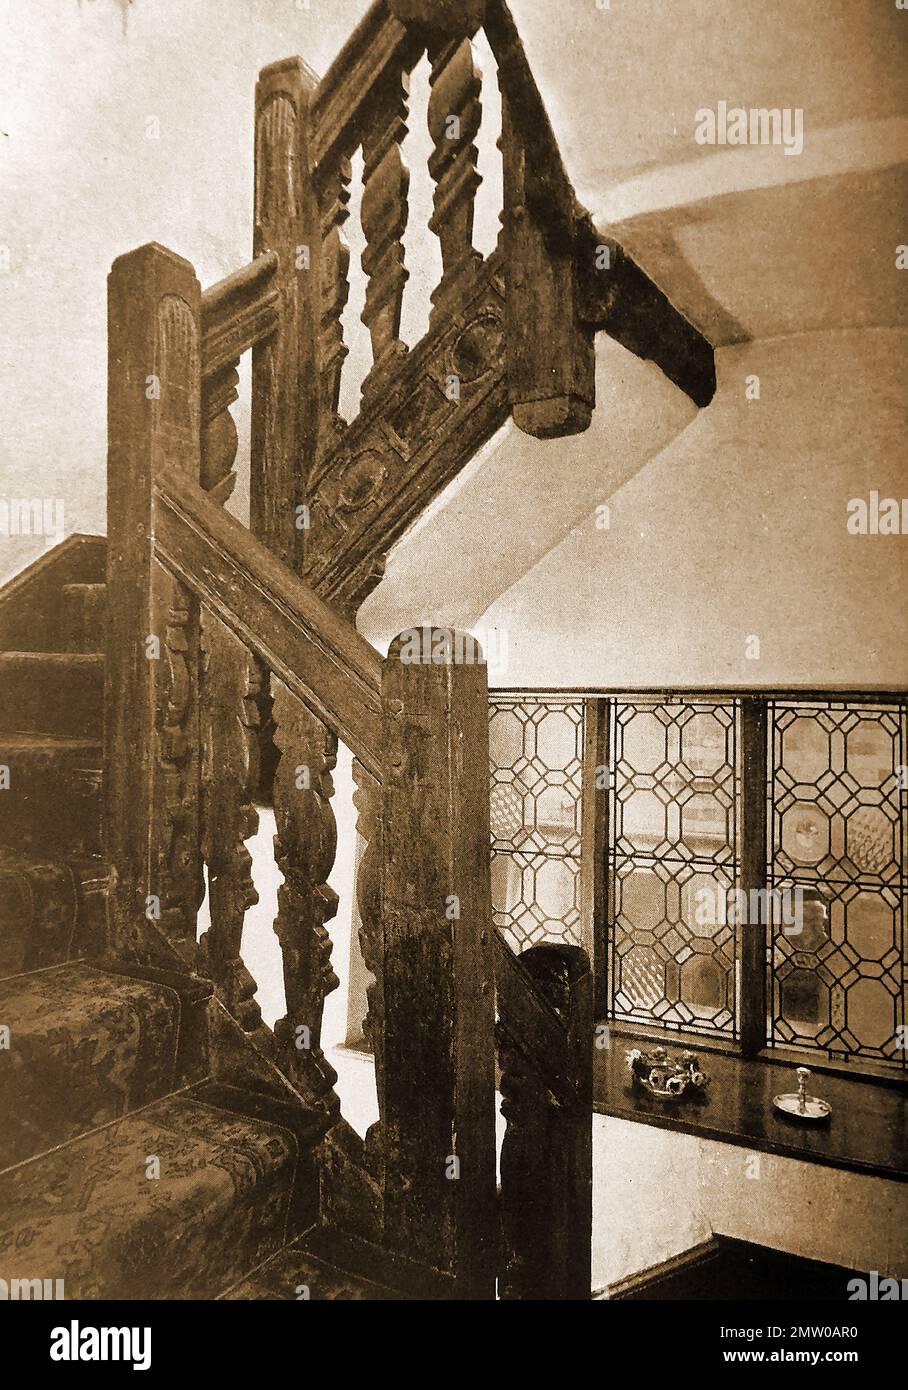 Britische Pubs Inns & Taverns - Ein etwa 1940 altes Foto der elisabethanischen Treppe am Stier in Denbigh, geschnitzt mit dem Wappen des Myddelton family.jpg - 2M Stockfoto